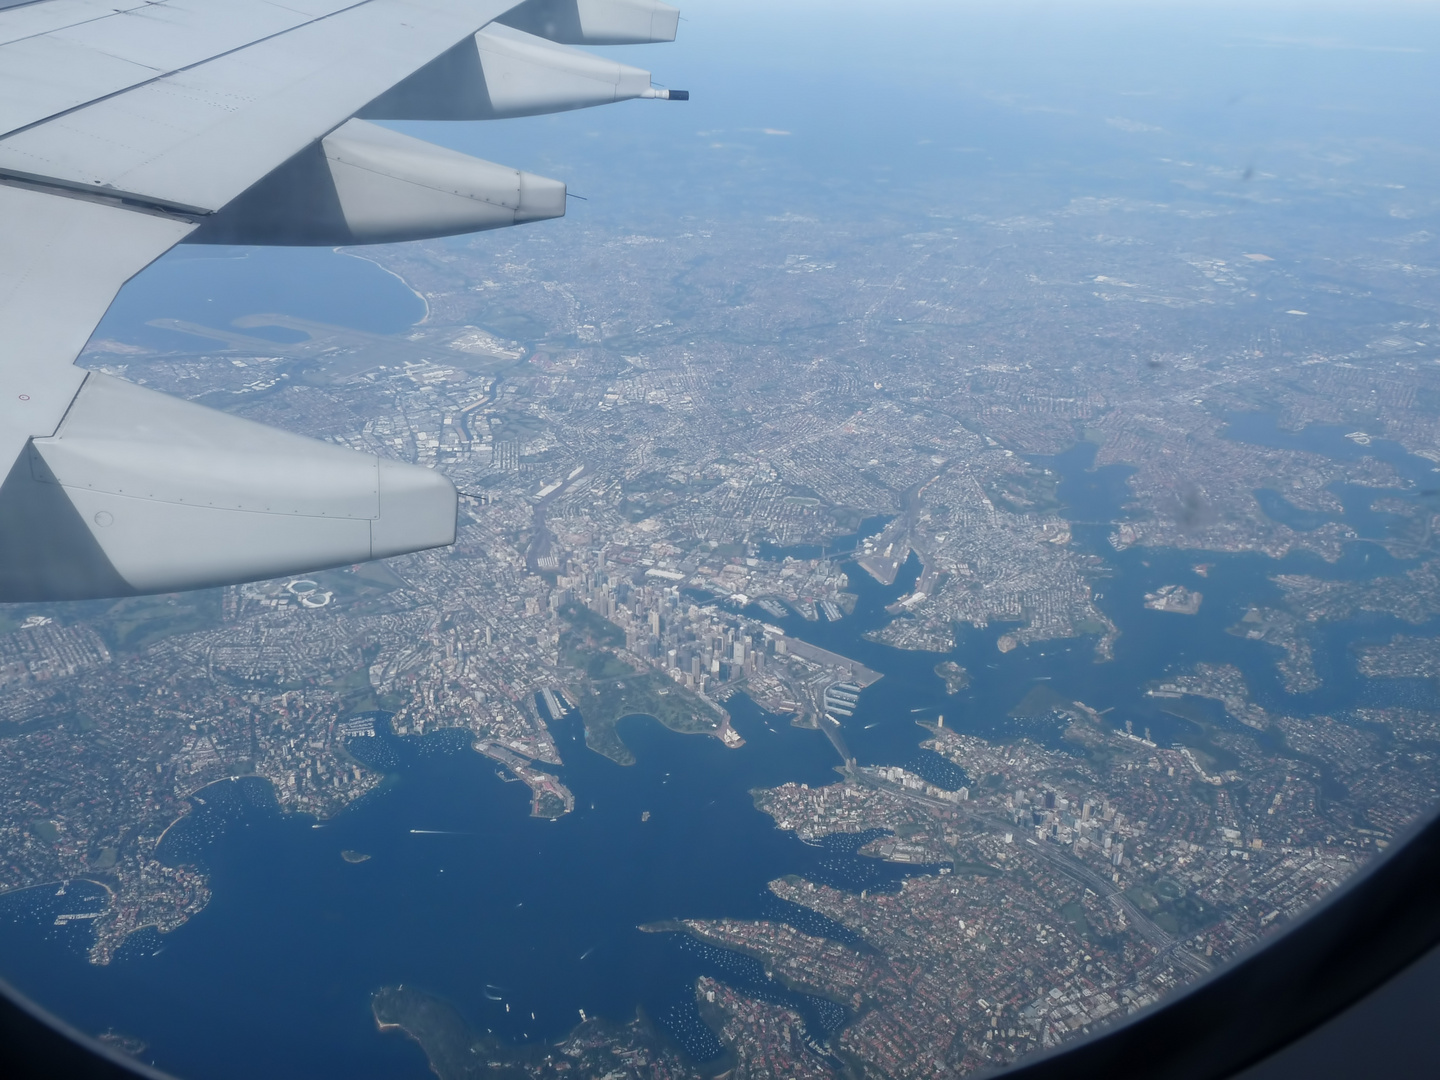 Sydney von oben